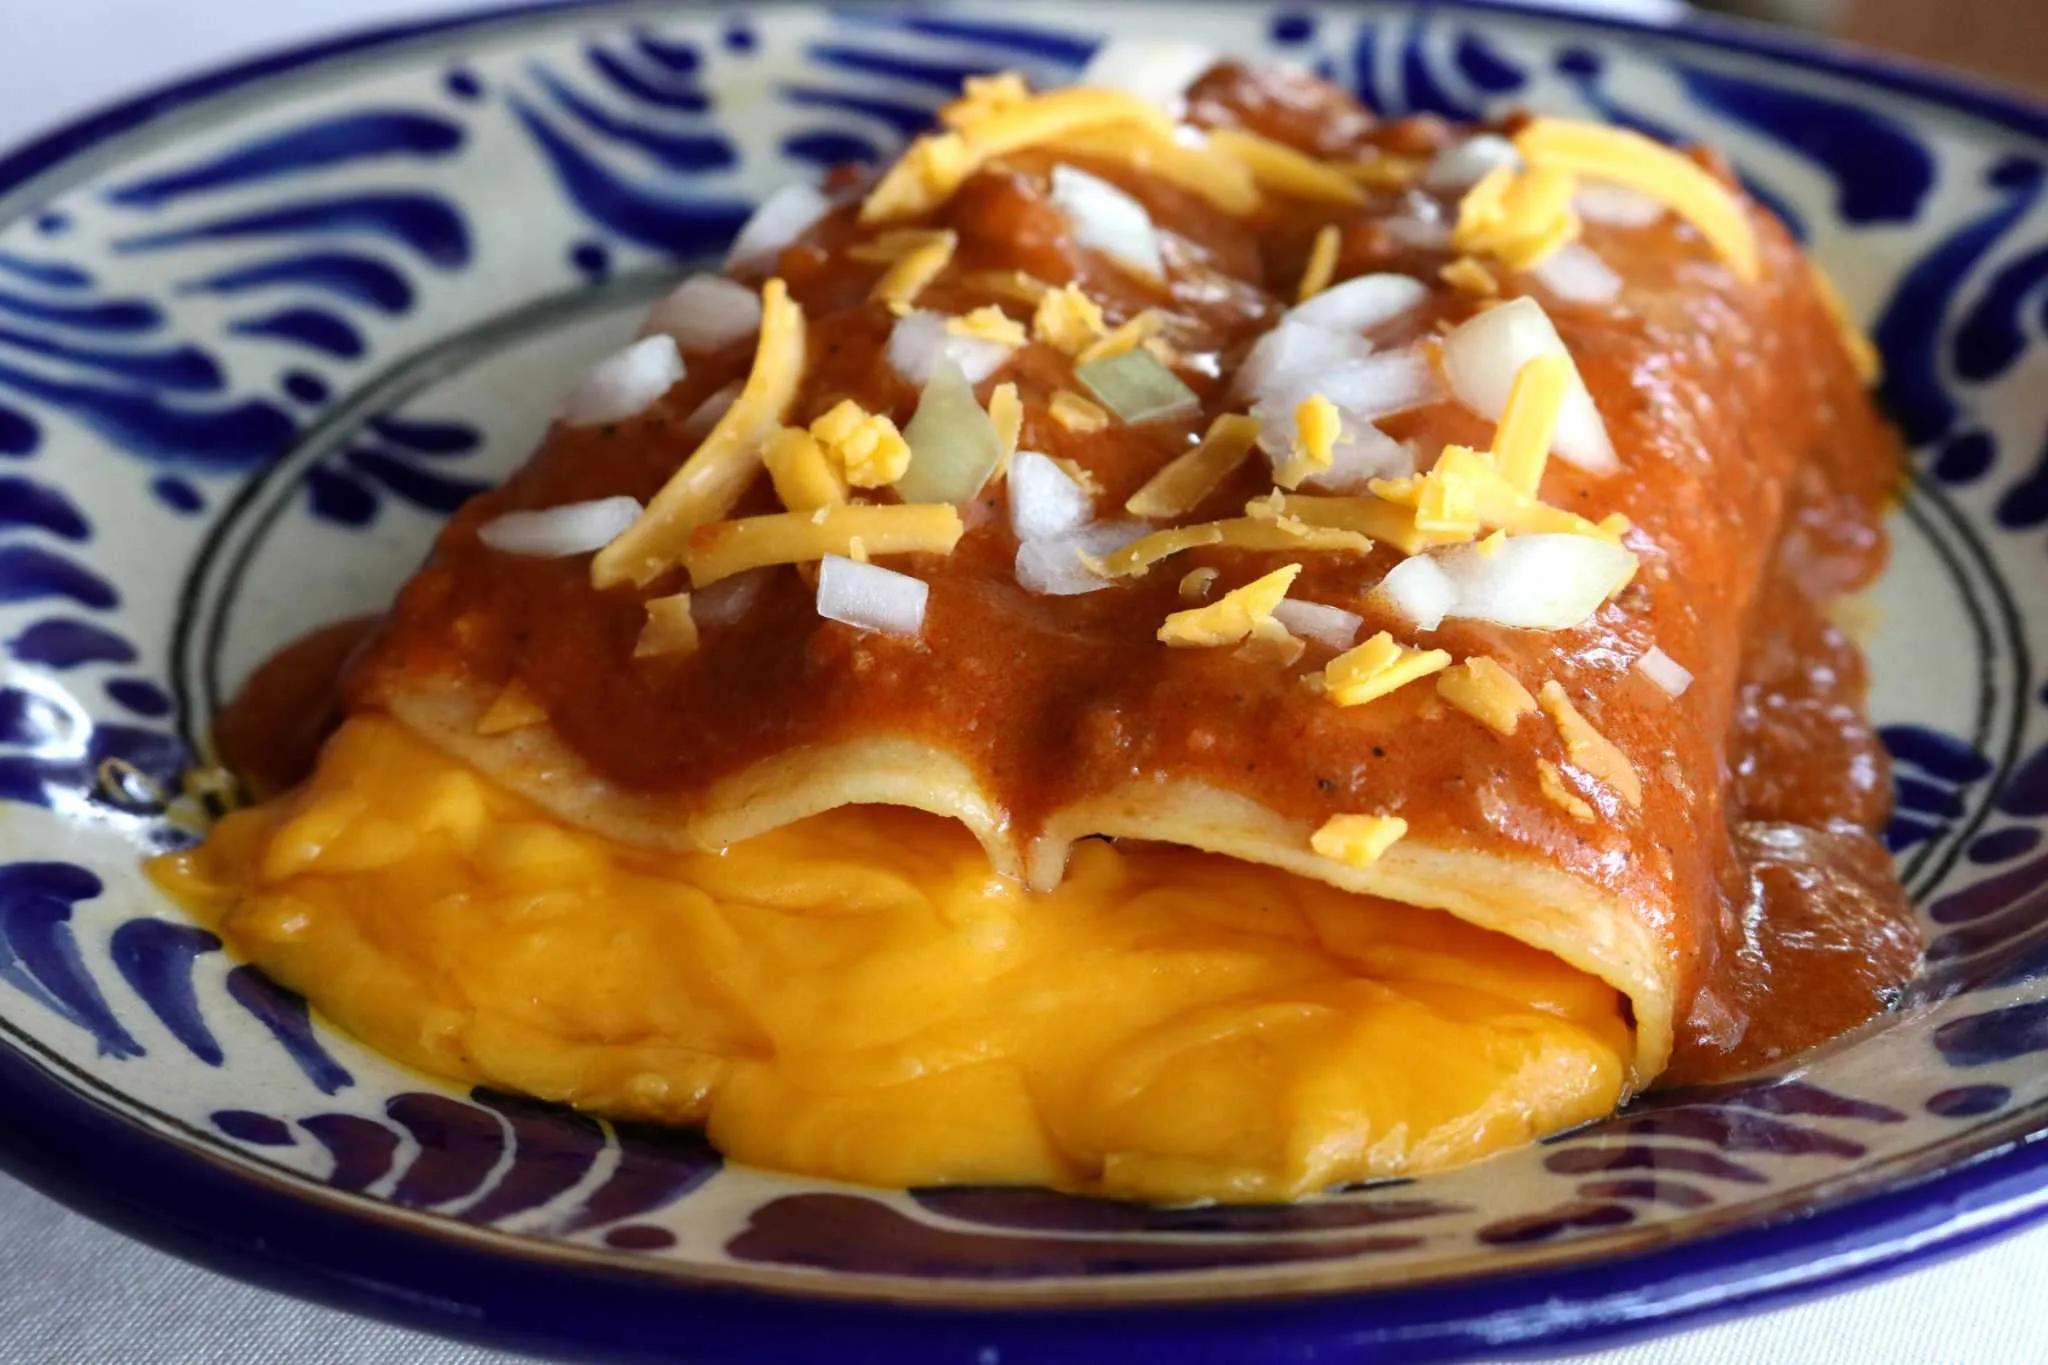 Houston Recipes: Cheese Enchiladas from Sylvia Casares, the Enchilada Queen